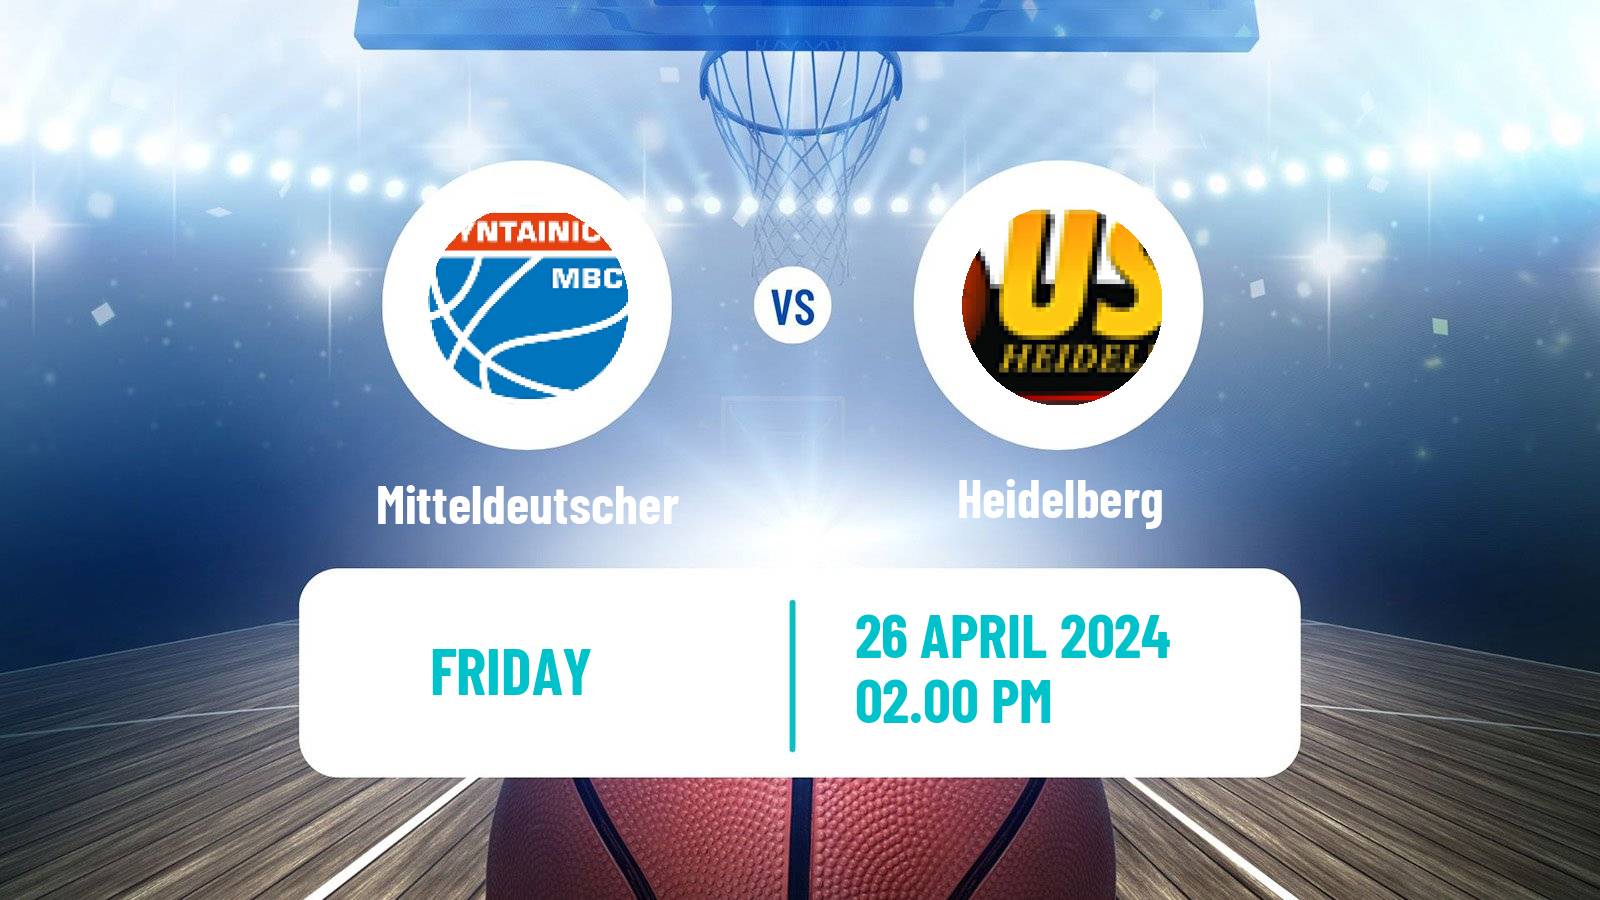 Basketball German BBL Mitteldeutscher - Heidelberg